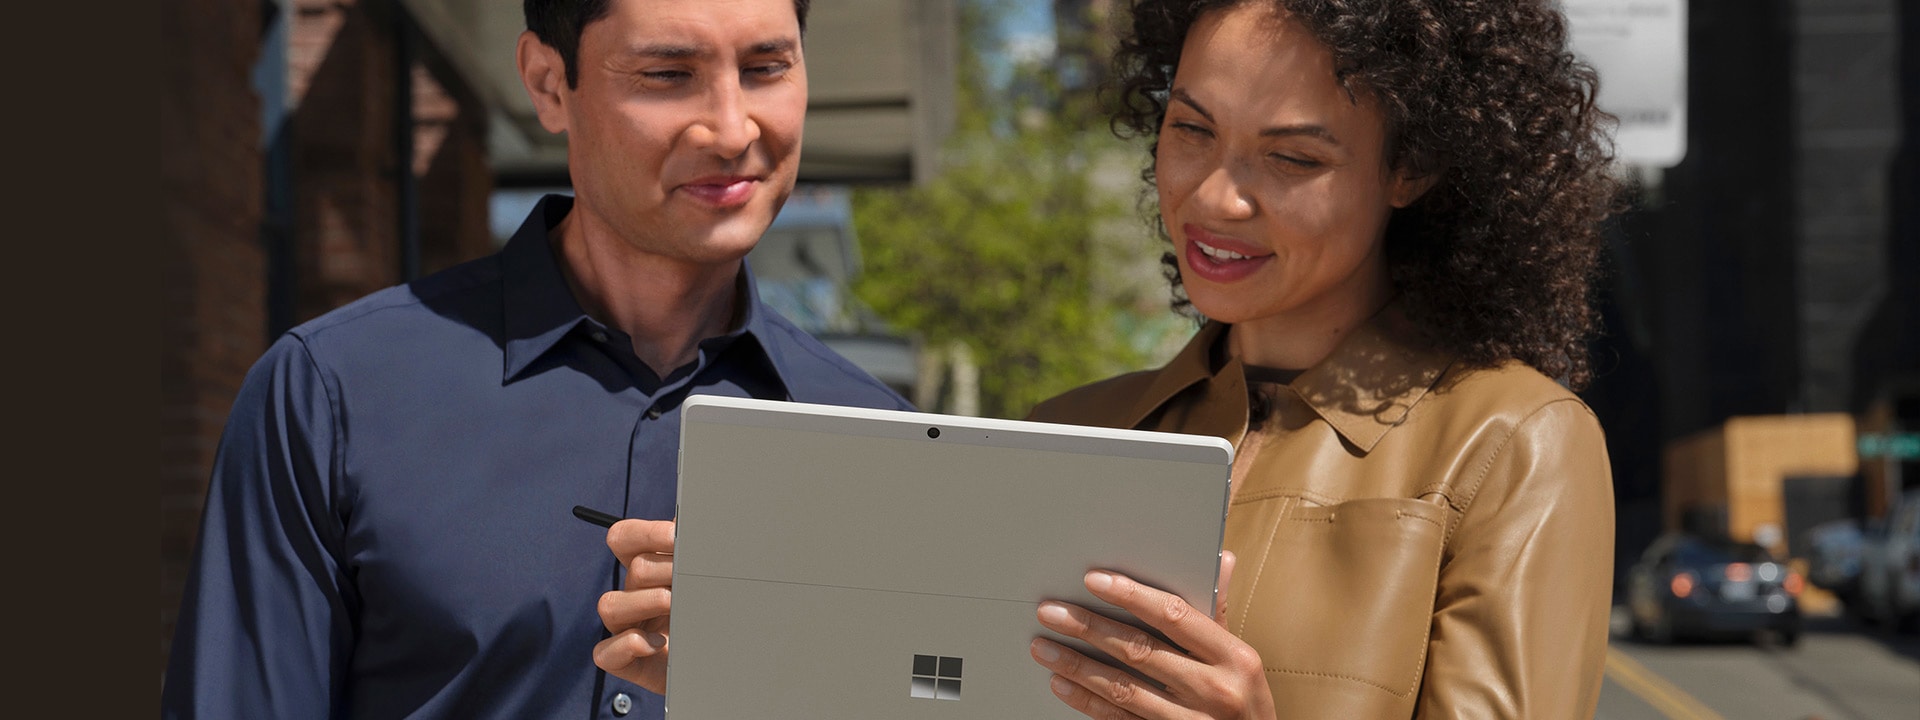 都会の歩道の外に立って、タブレット モードの Surface Pro X の画面を見る 2 人の人物